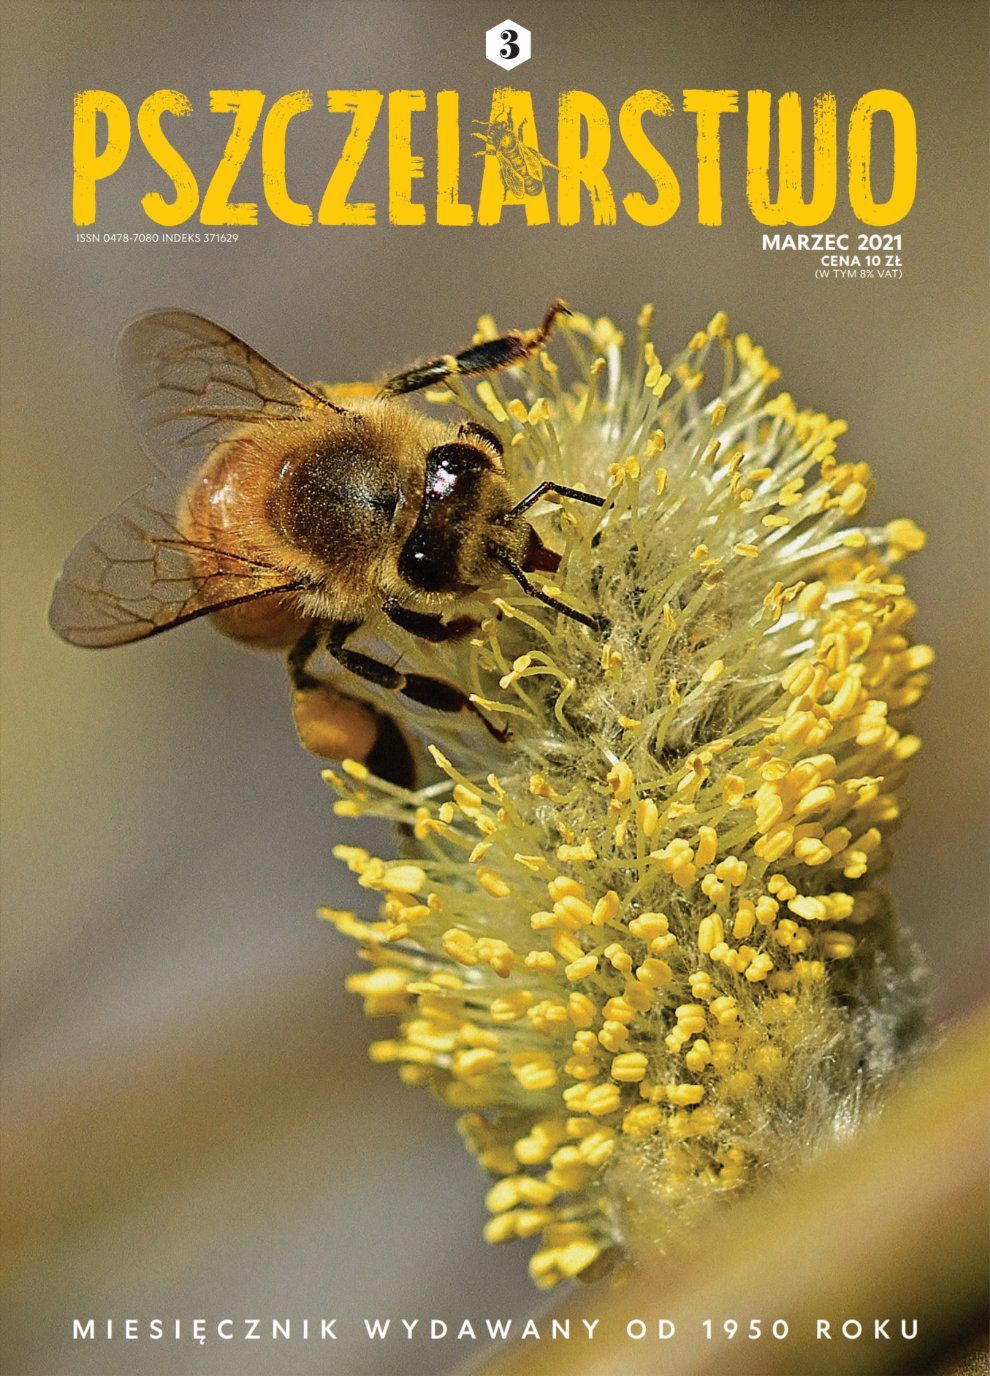 Miesięcznik Pszczelarstwo - Marzec 2021